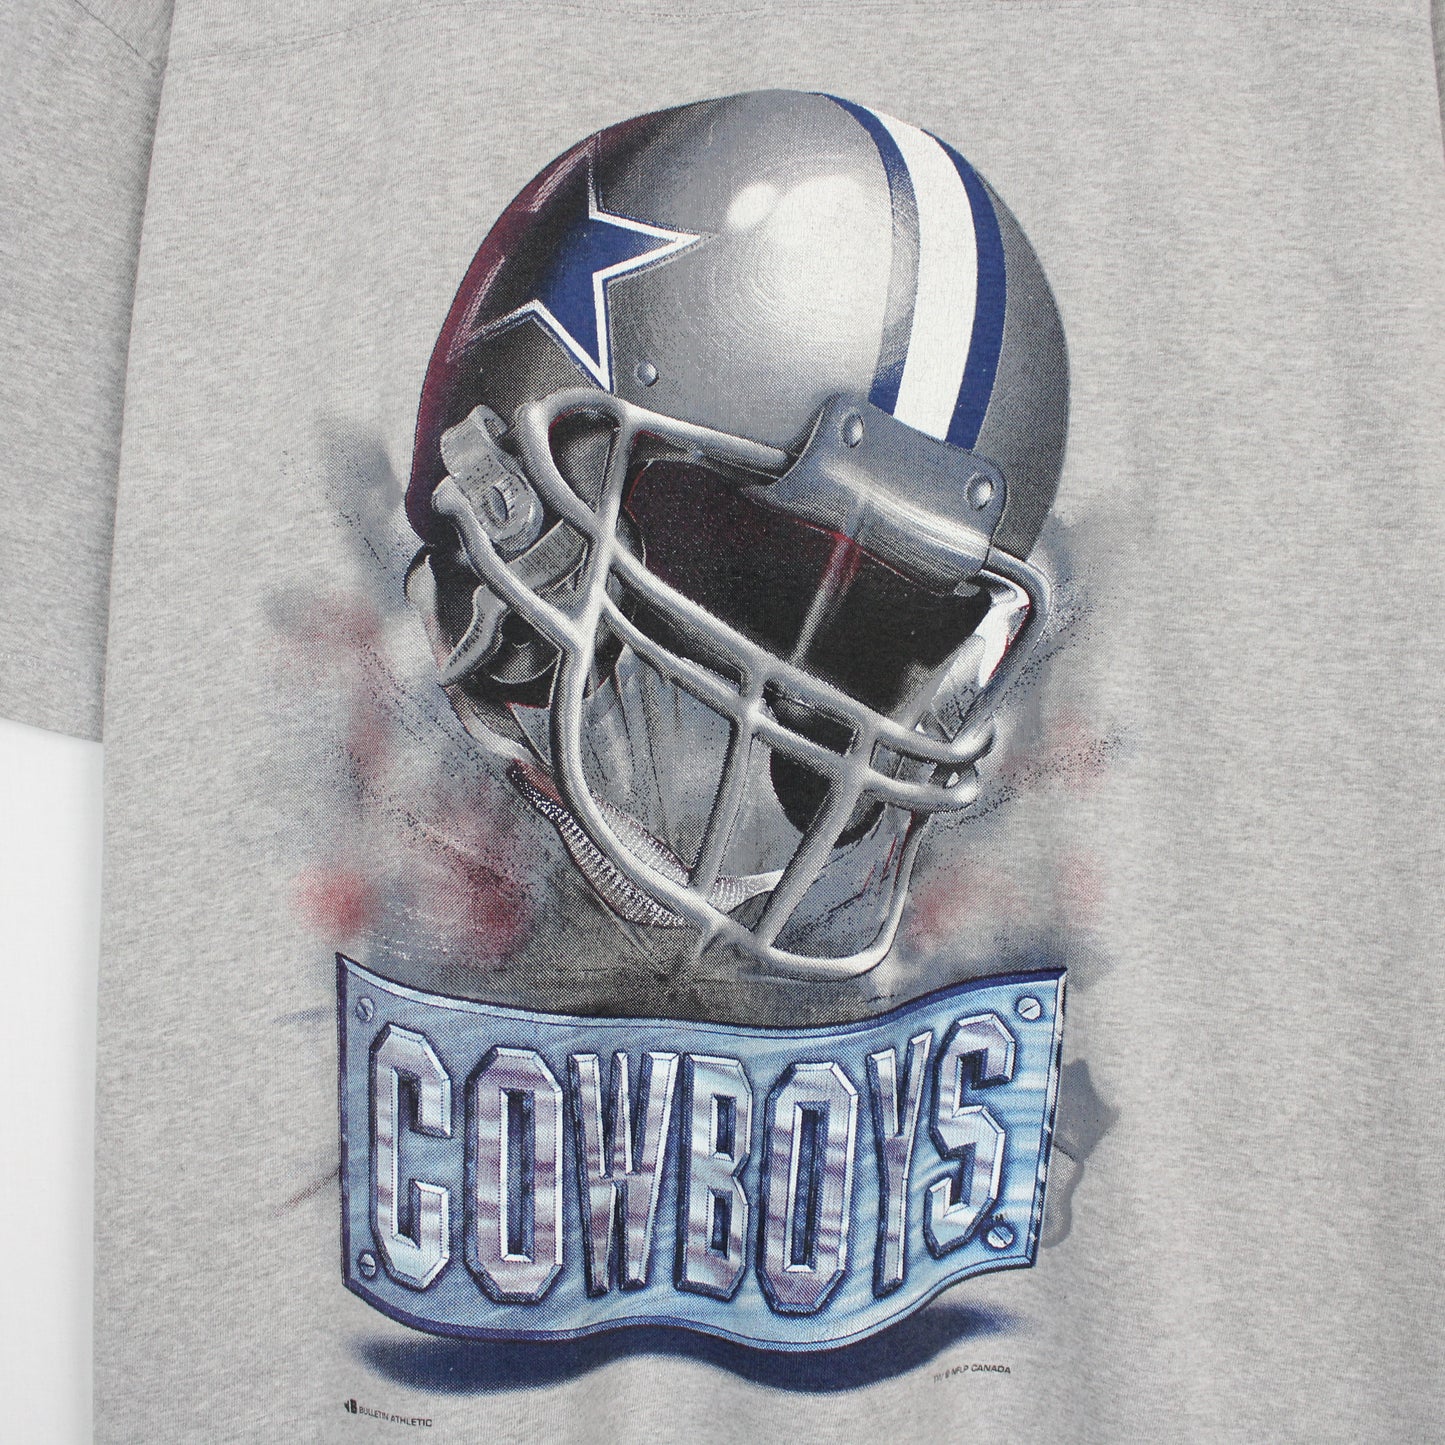 Vintage 1997 Dallas Cowboys NFL Tee - XL